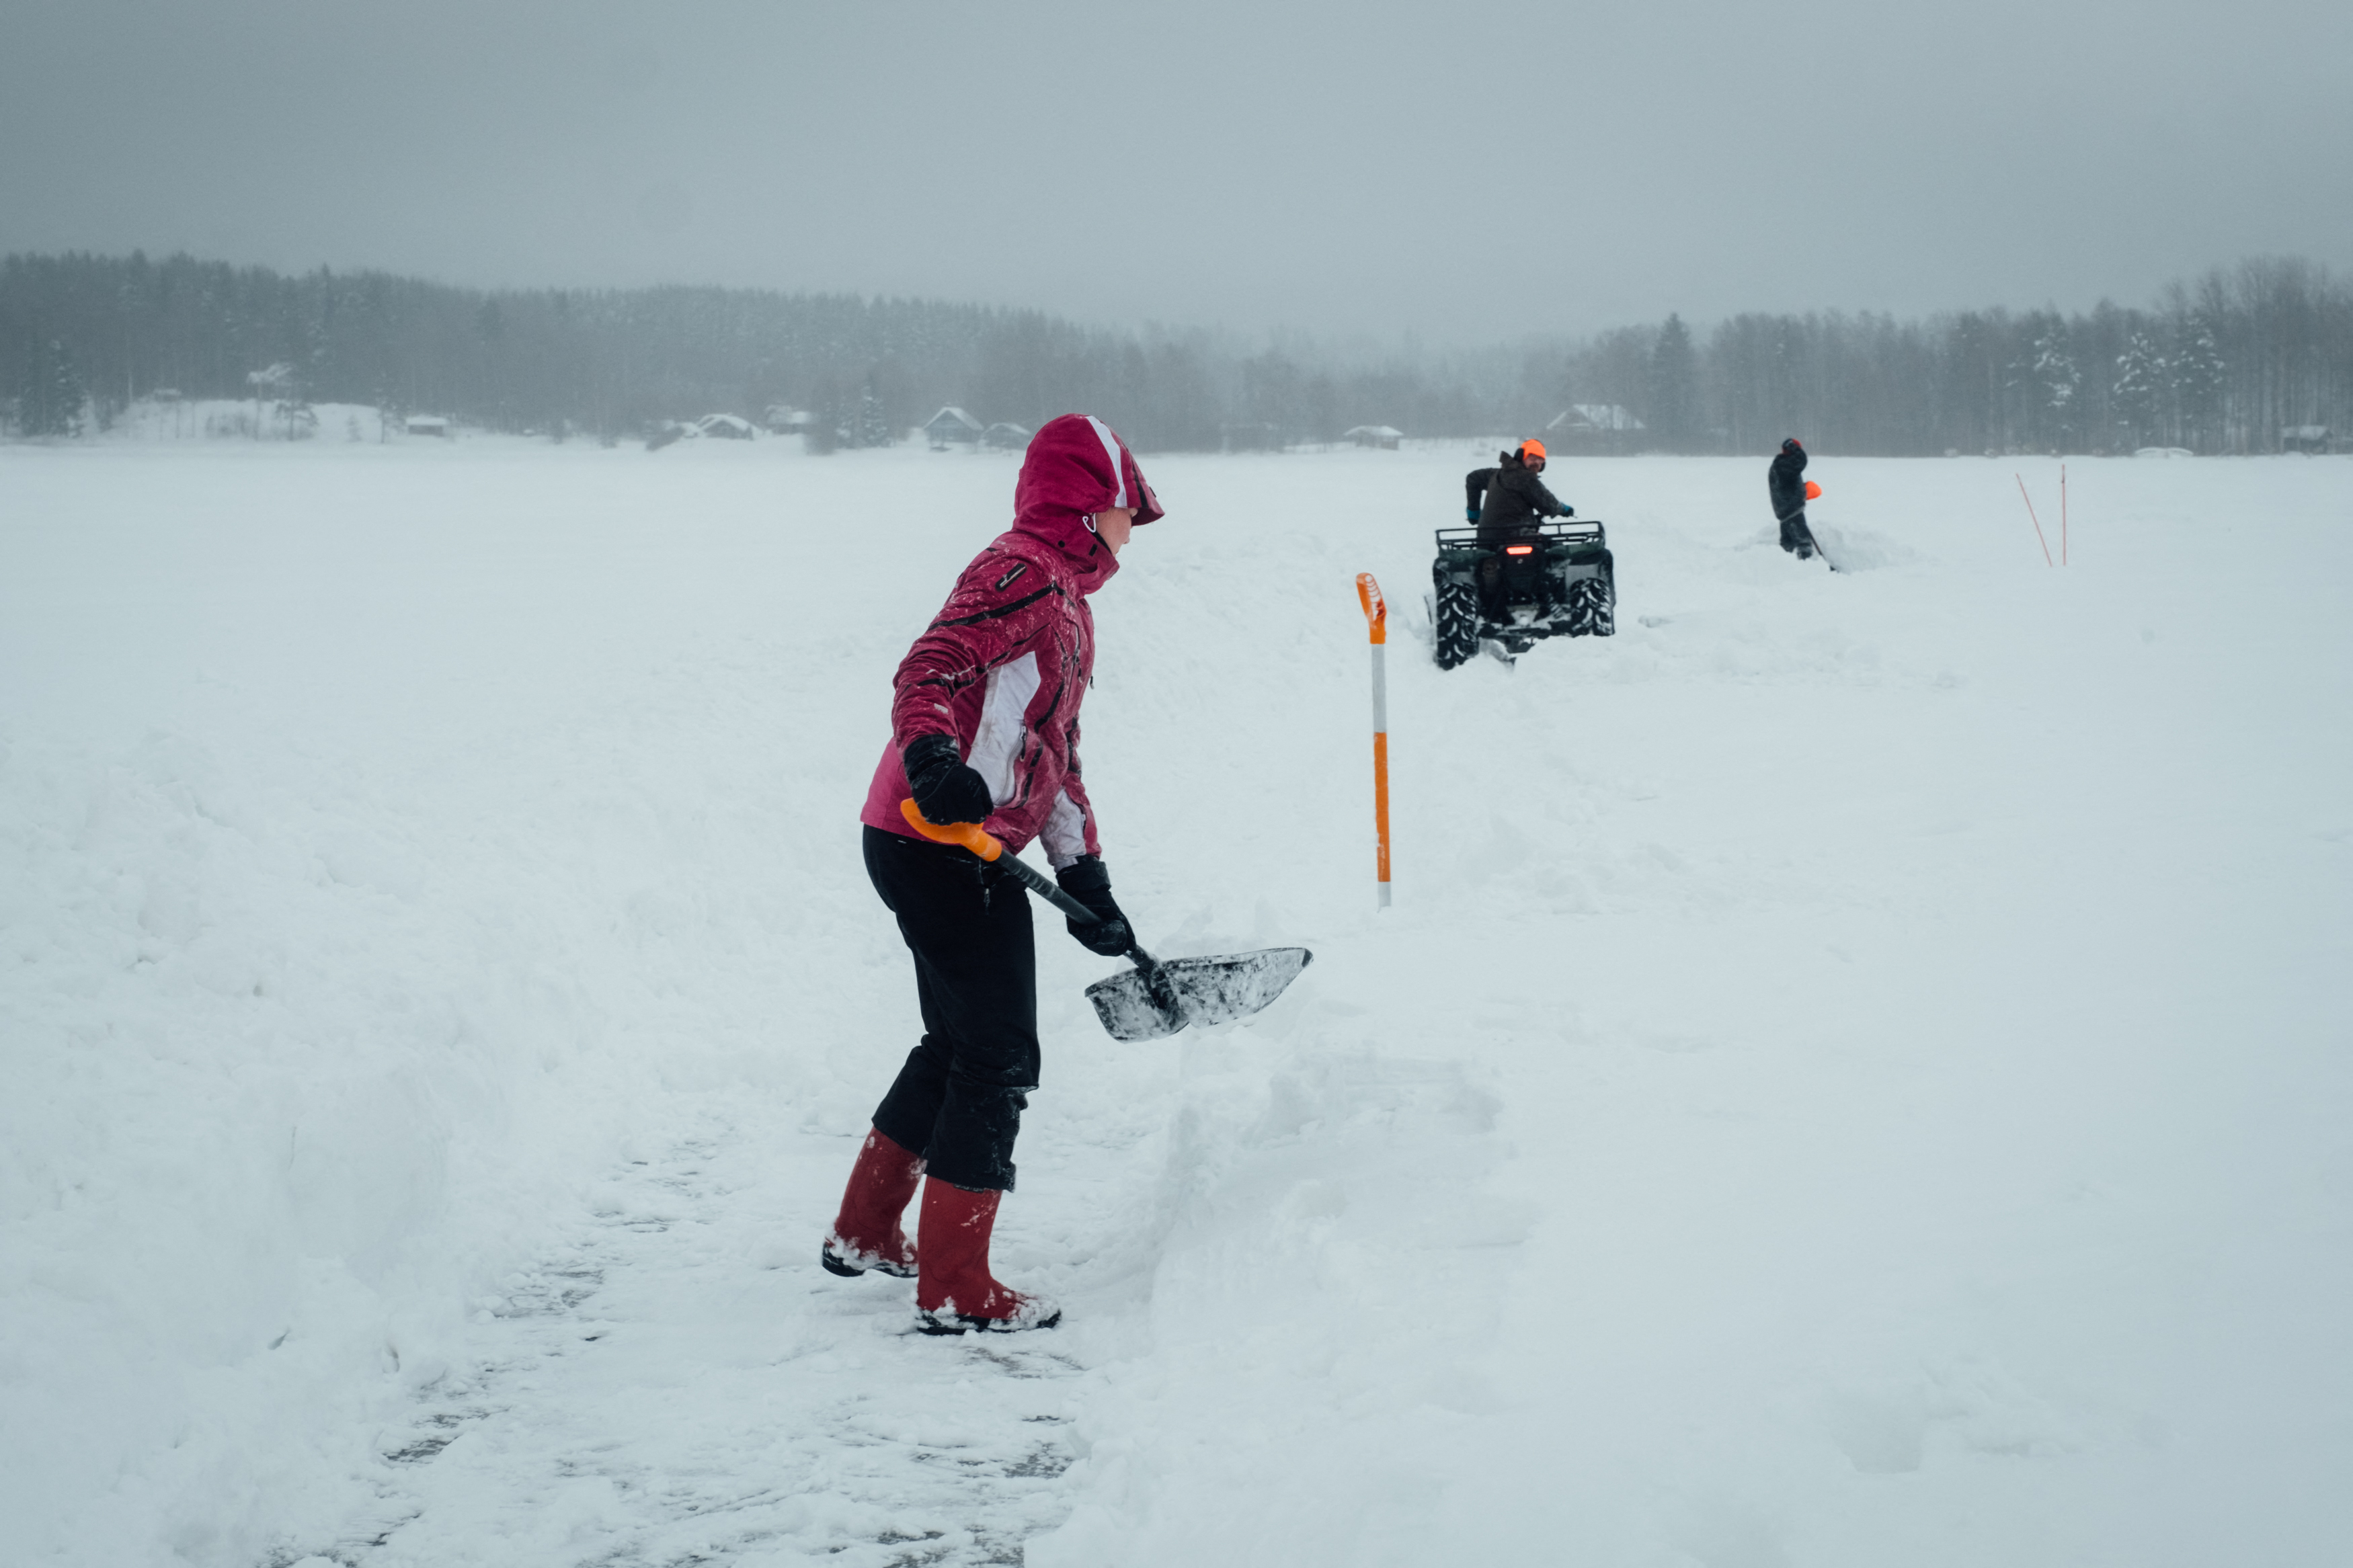 La gente quita la nieve a lo largo del perímetro de un carrusel de hielo que está en construcción para un intento de récord mundial en el lago congelado. (Alessandro RAMPAZZO / AFP)